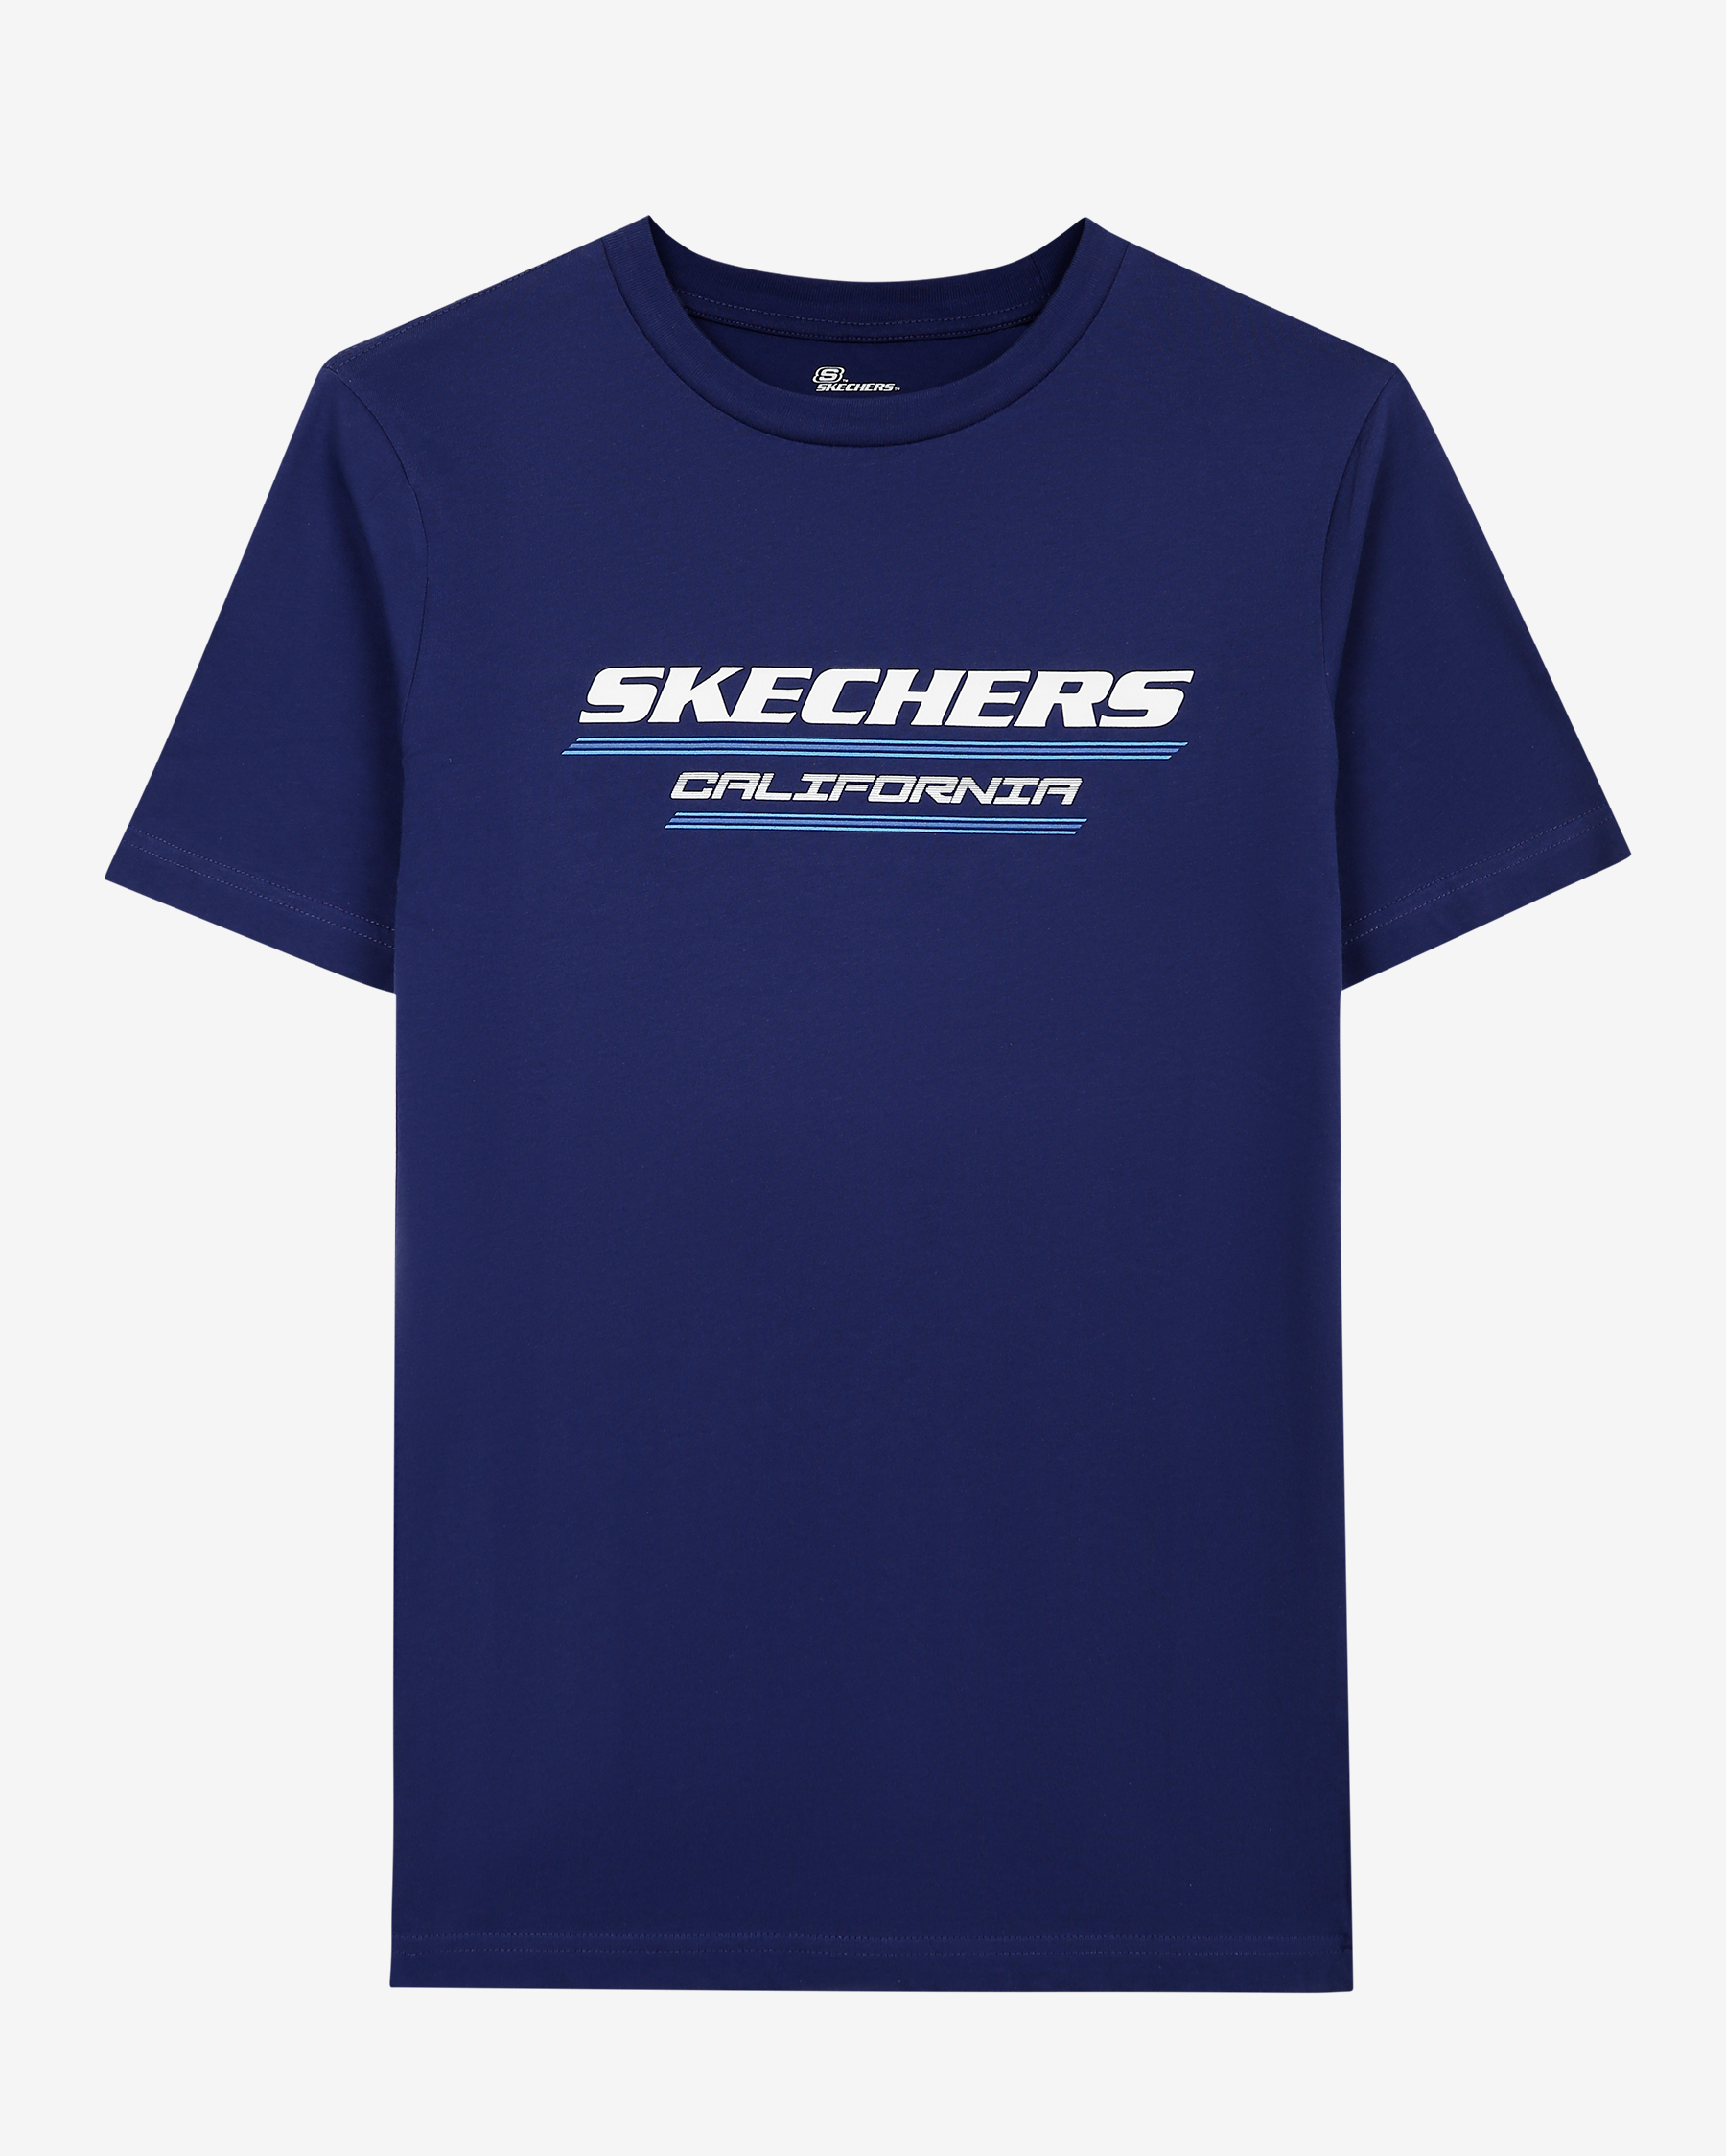 Tee Skechers Graphic M Tshirt T-shirt S231287-410 Lacivert Crew Neck Erkek